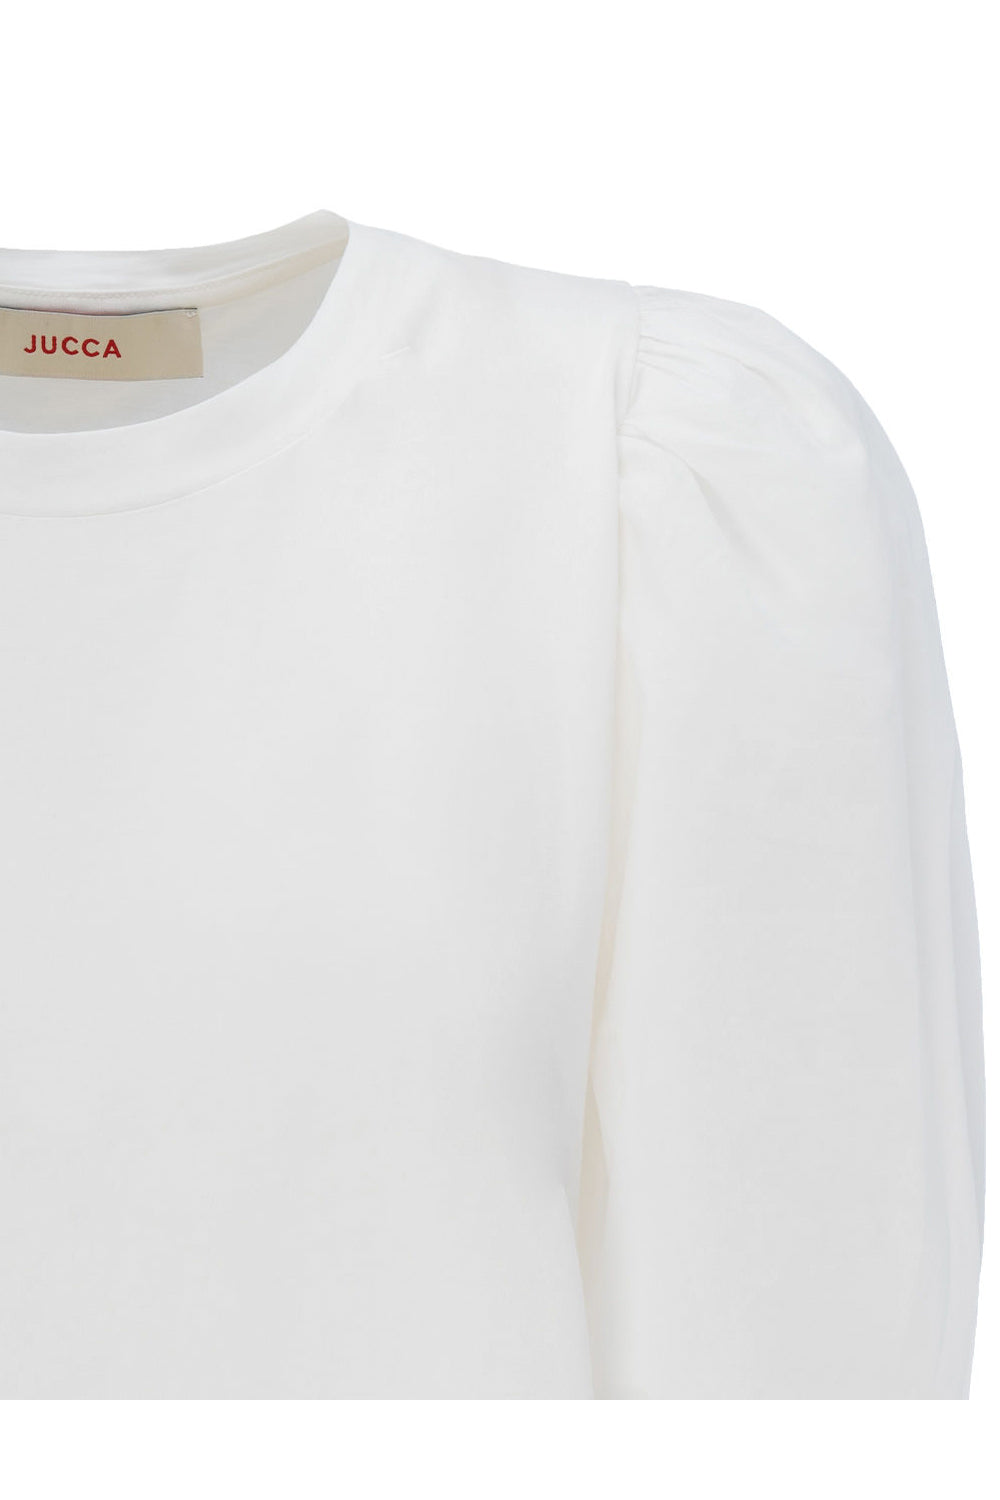 Tshirt con manica palloncino - JUCCA T-shirt JUCCA   